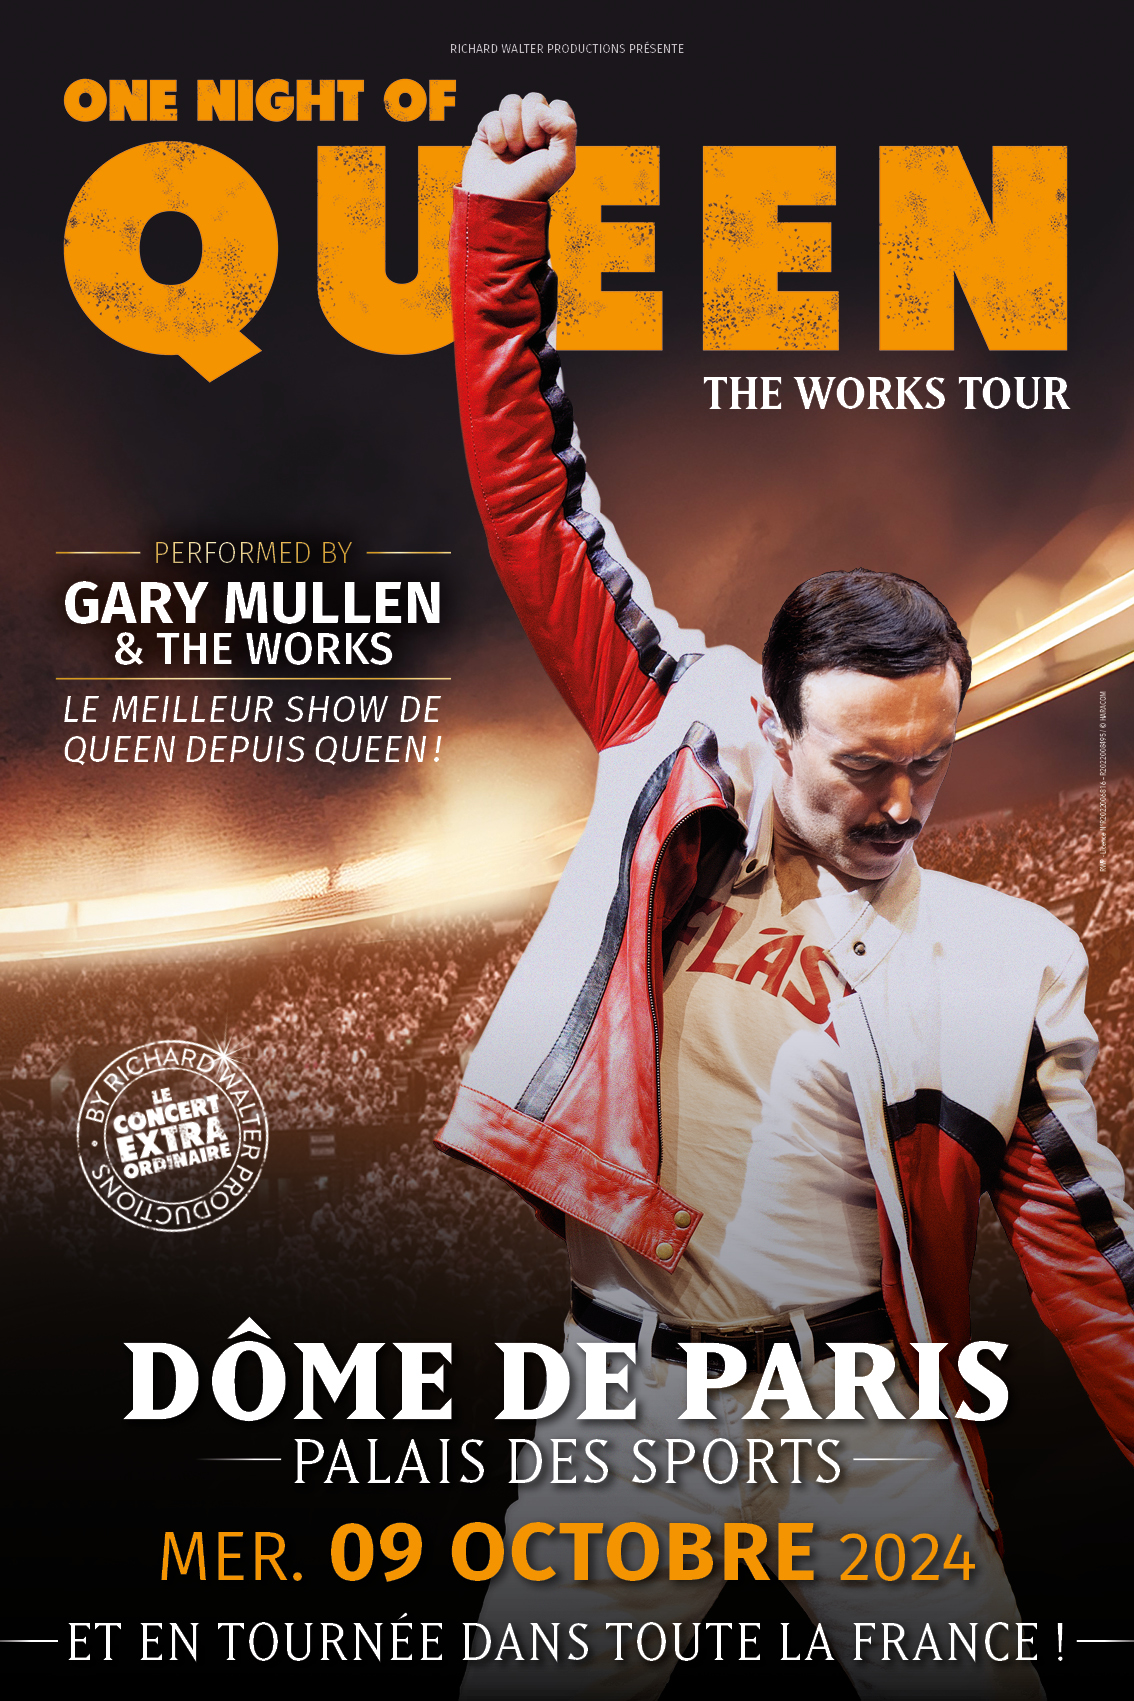 One Night of Queen revient pour une belle tournée française en septembre et octobre 2024